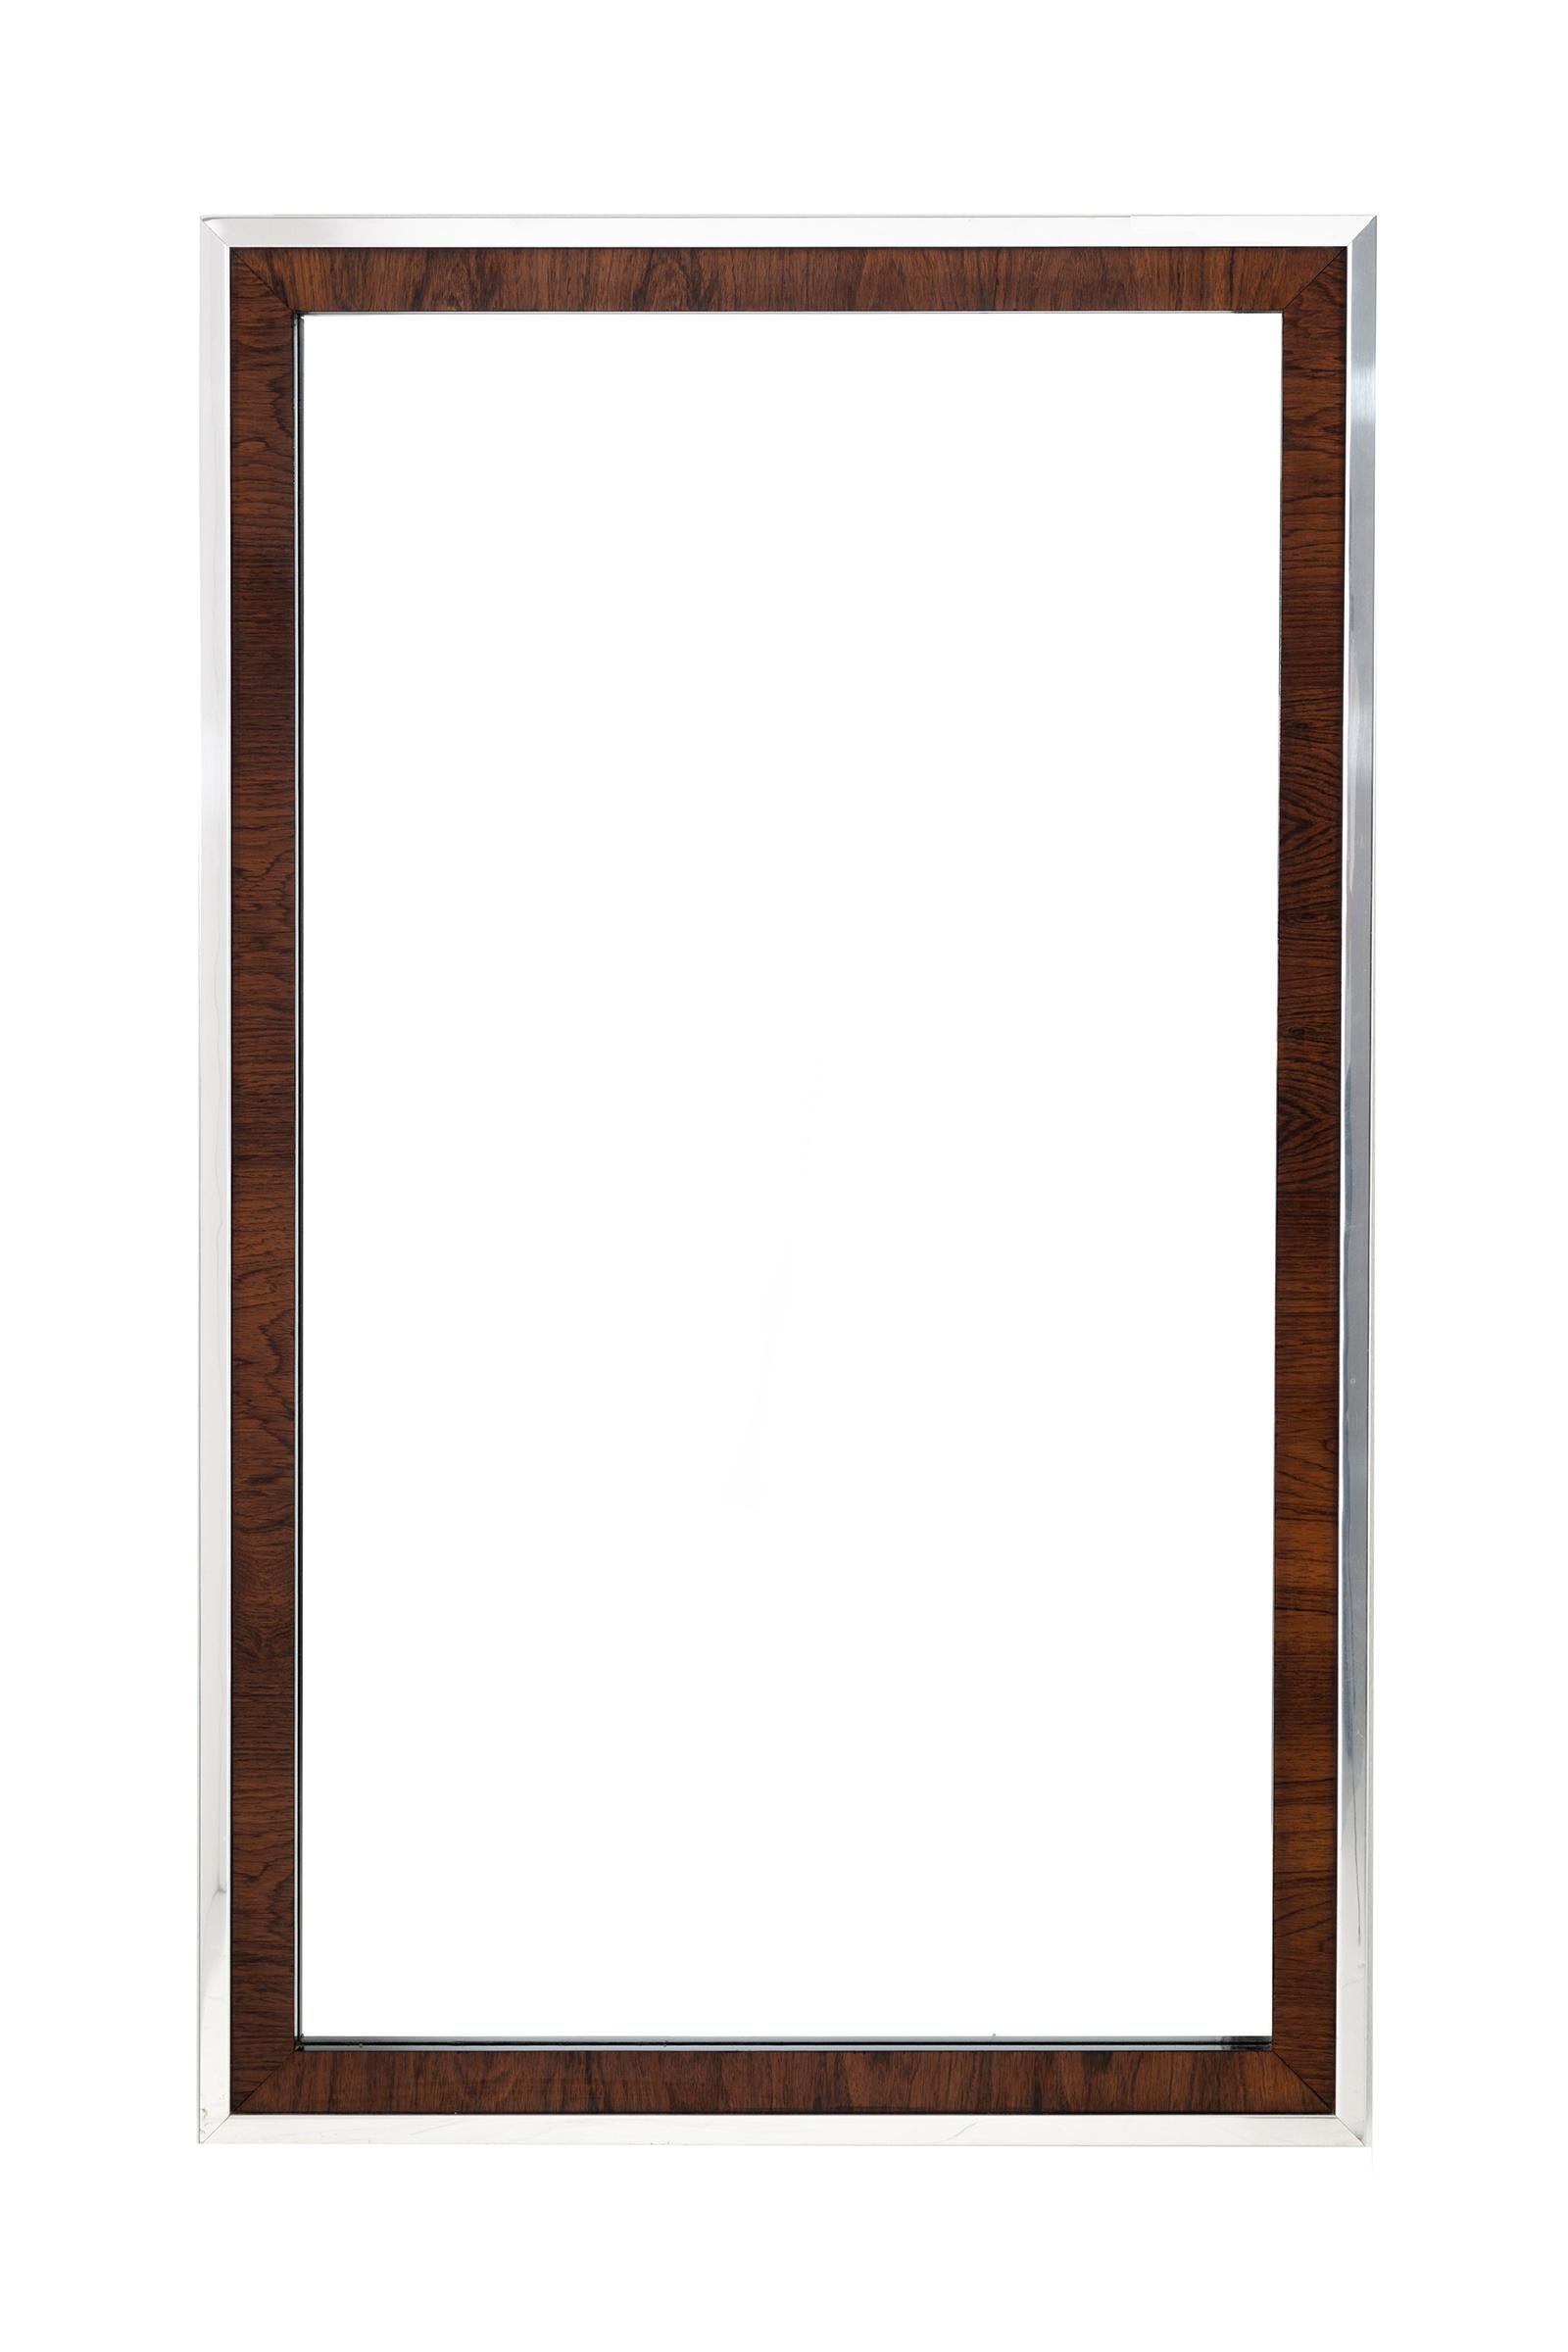 Spiegel im Stil von Florence Knoll aus Palisander und Chrom, kann vertikal oder horizontal aufgestellt werden.